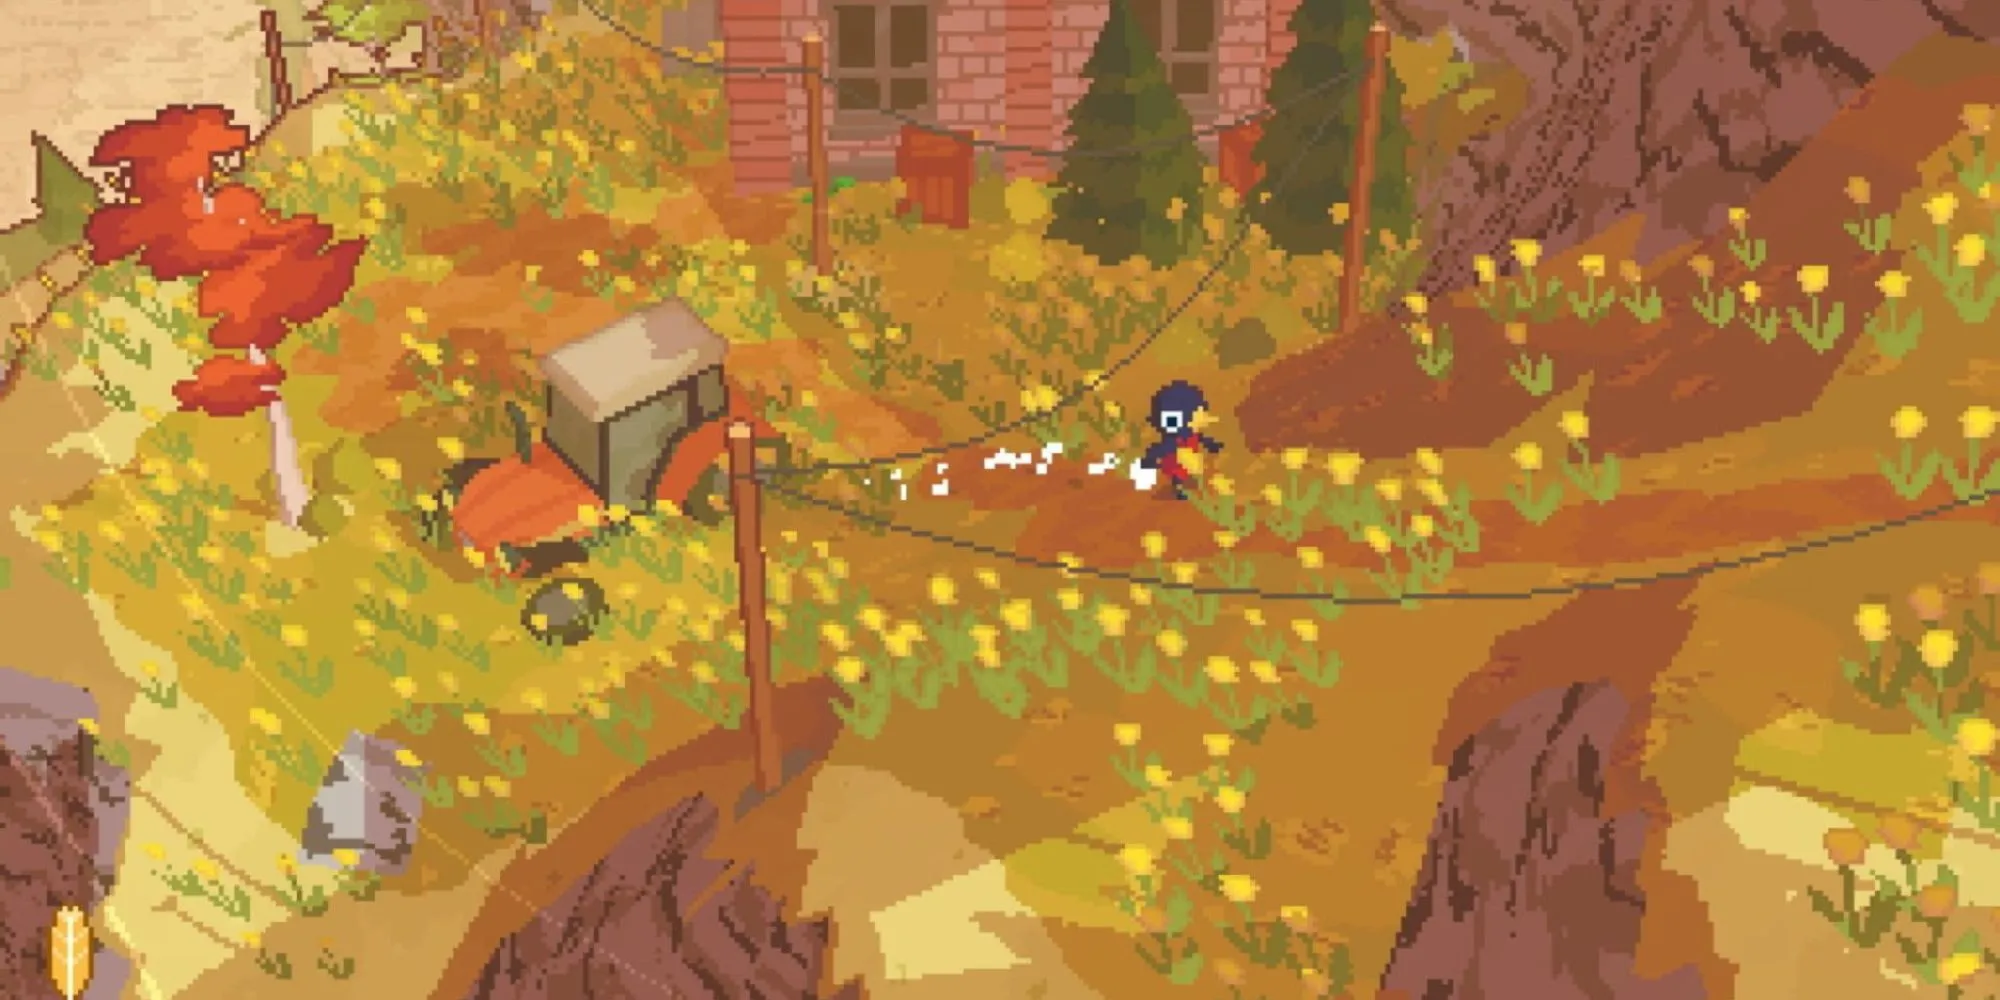 플레이어가 집과 트랙터가 배경에 보이는 언덕을 뛰어 오르는 모습